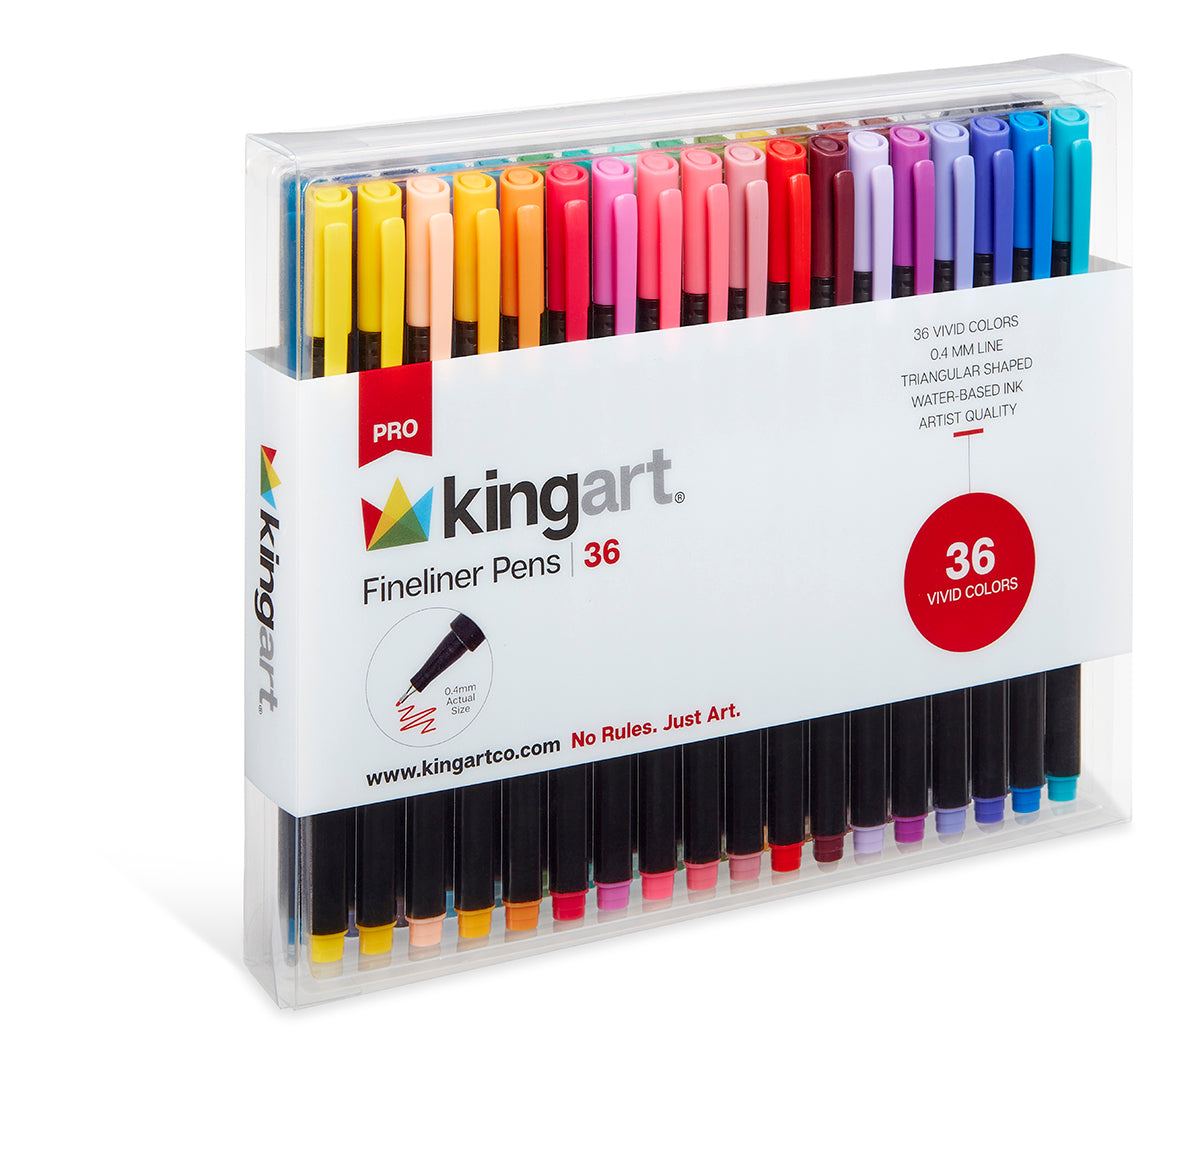 KINGART® Inkline™ Fine Line Art & Graphic Pens, Archival Japanese Ink, Set  of 8 Unique Colors, Size 10 Nib